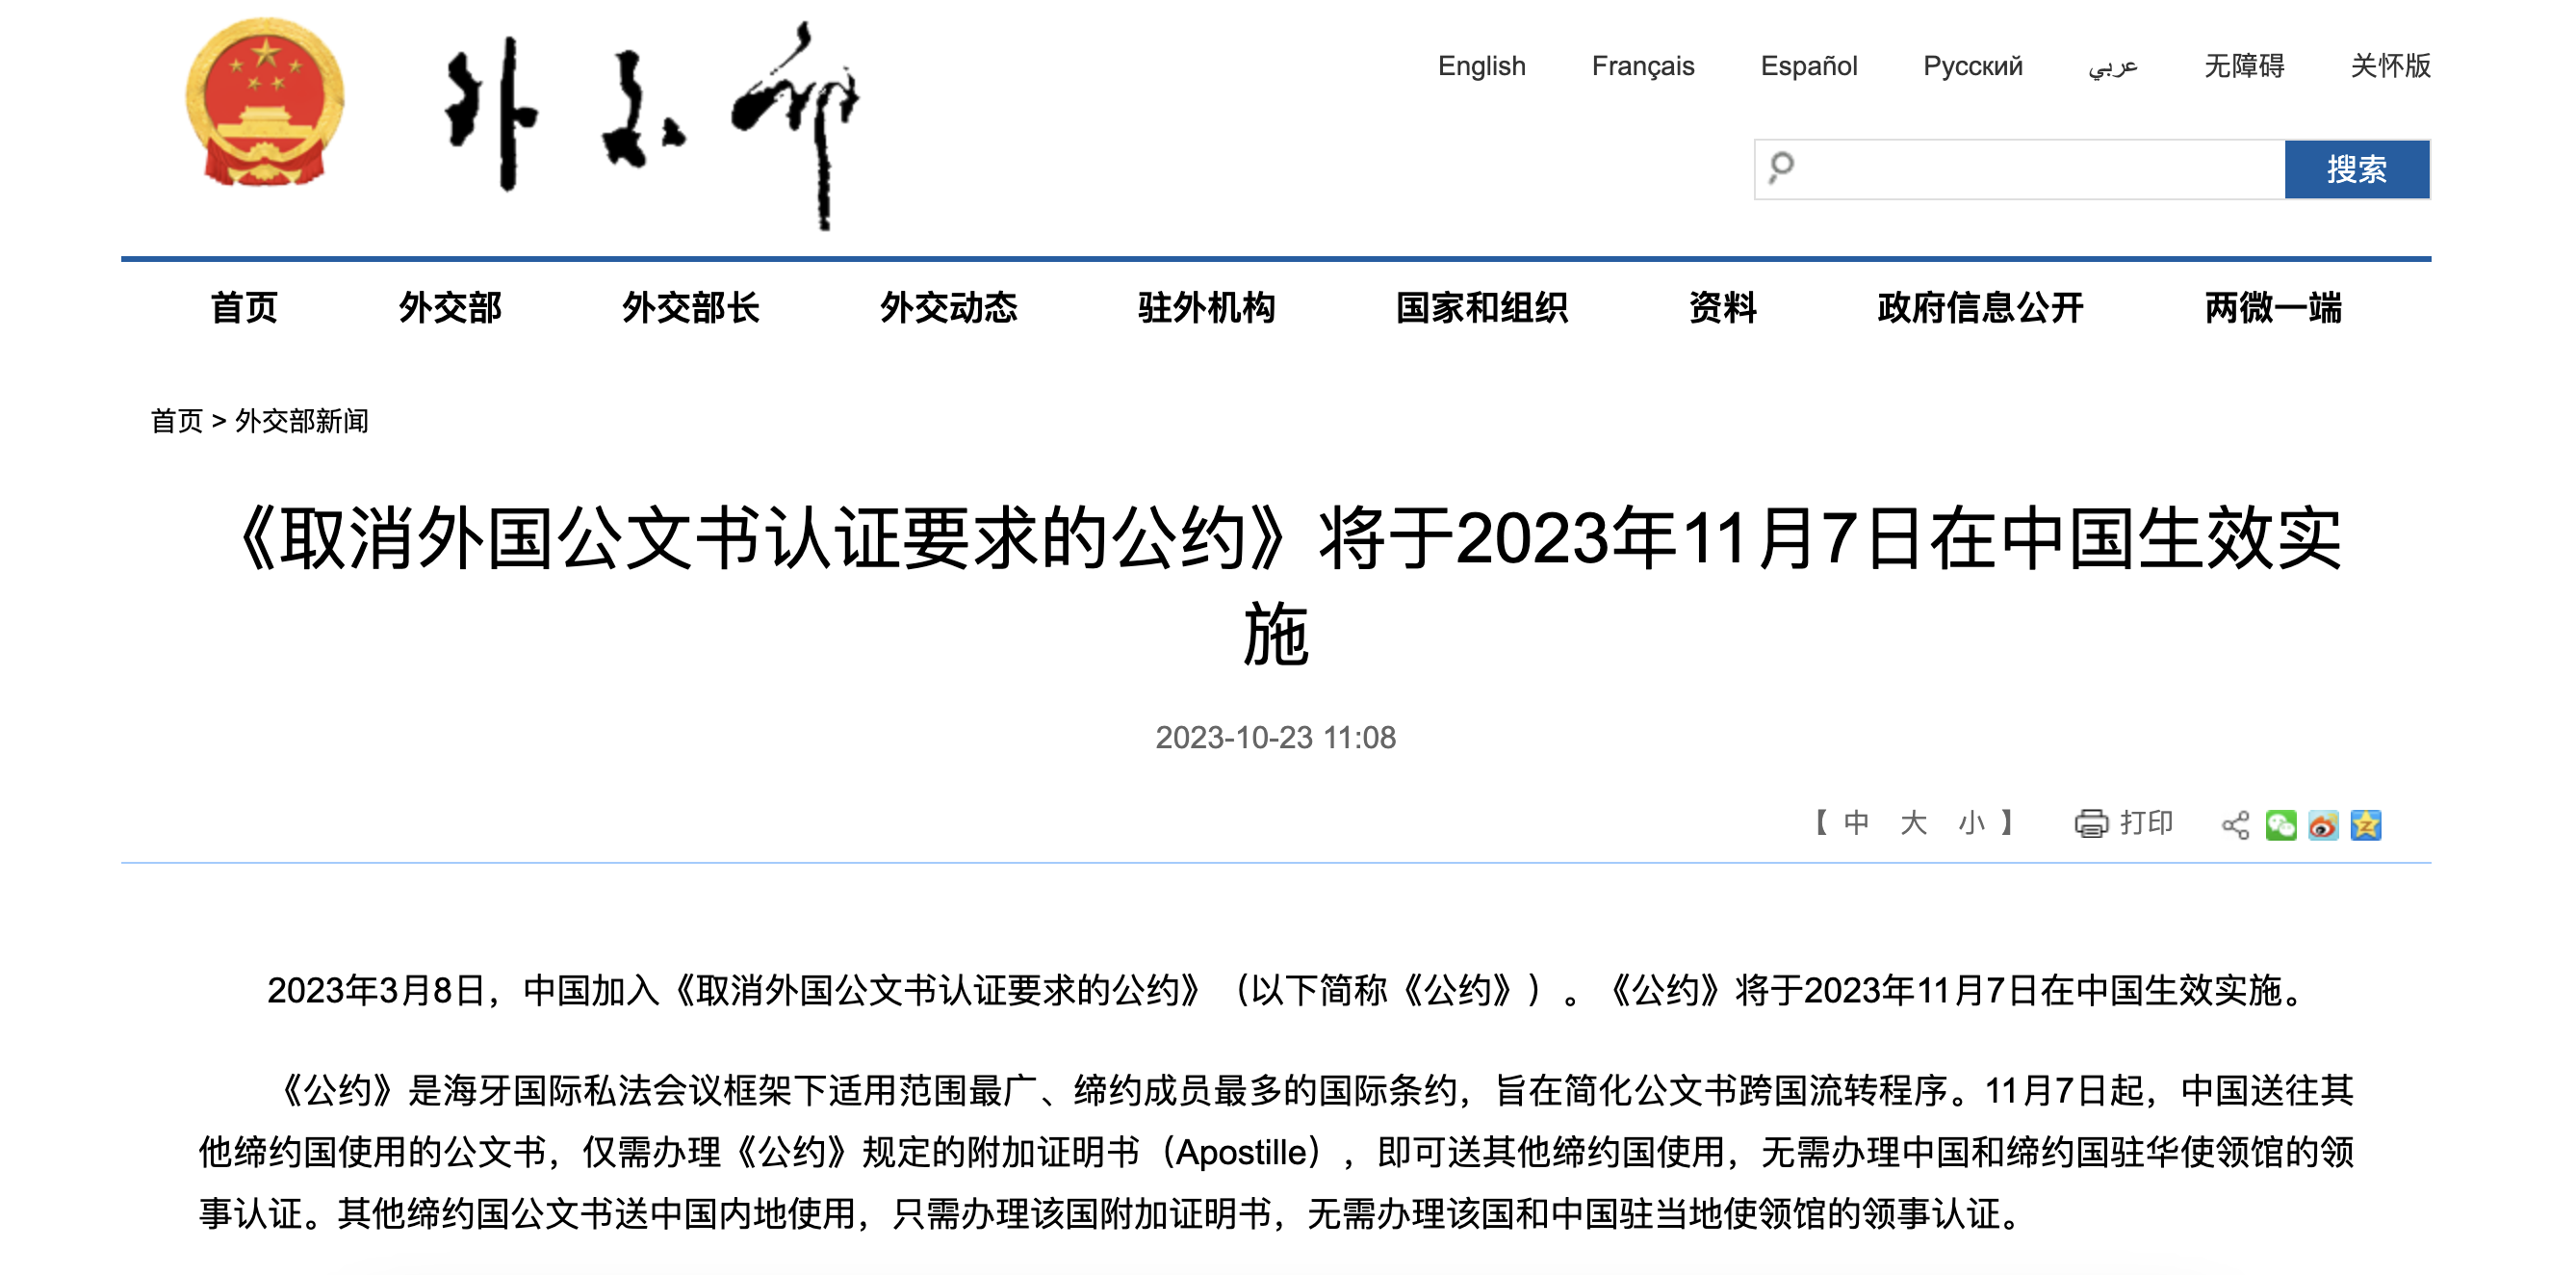 《取消外國公文書認證要求的公約》將於2023年11月7日在中國生效實施